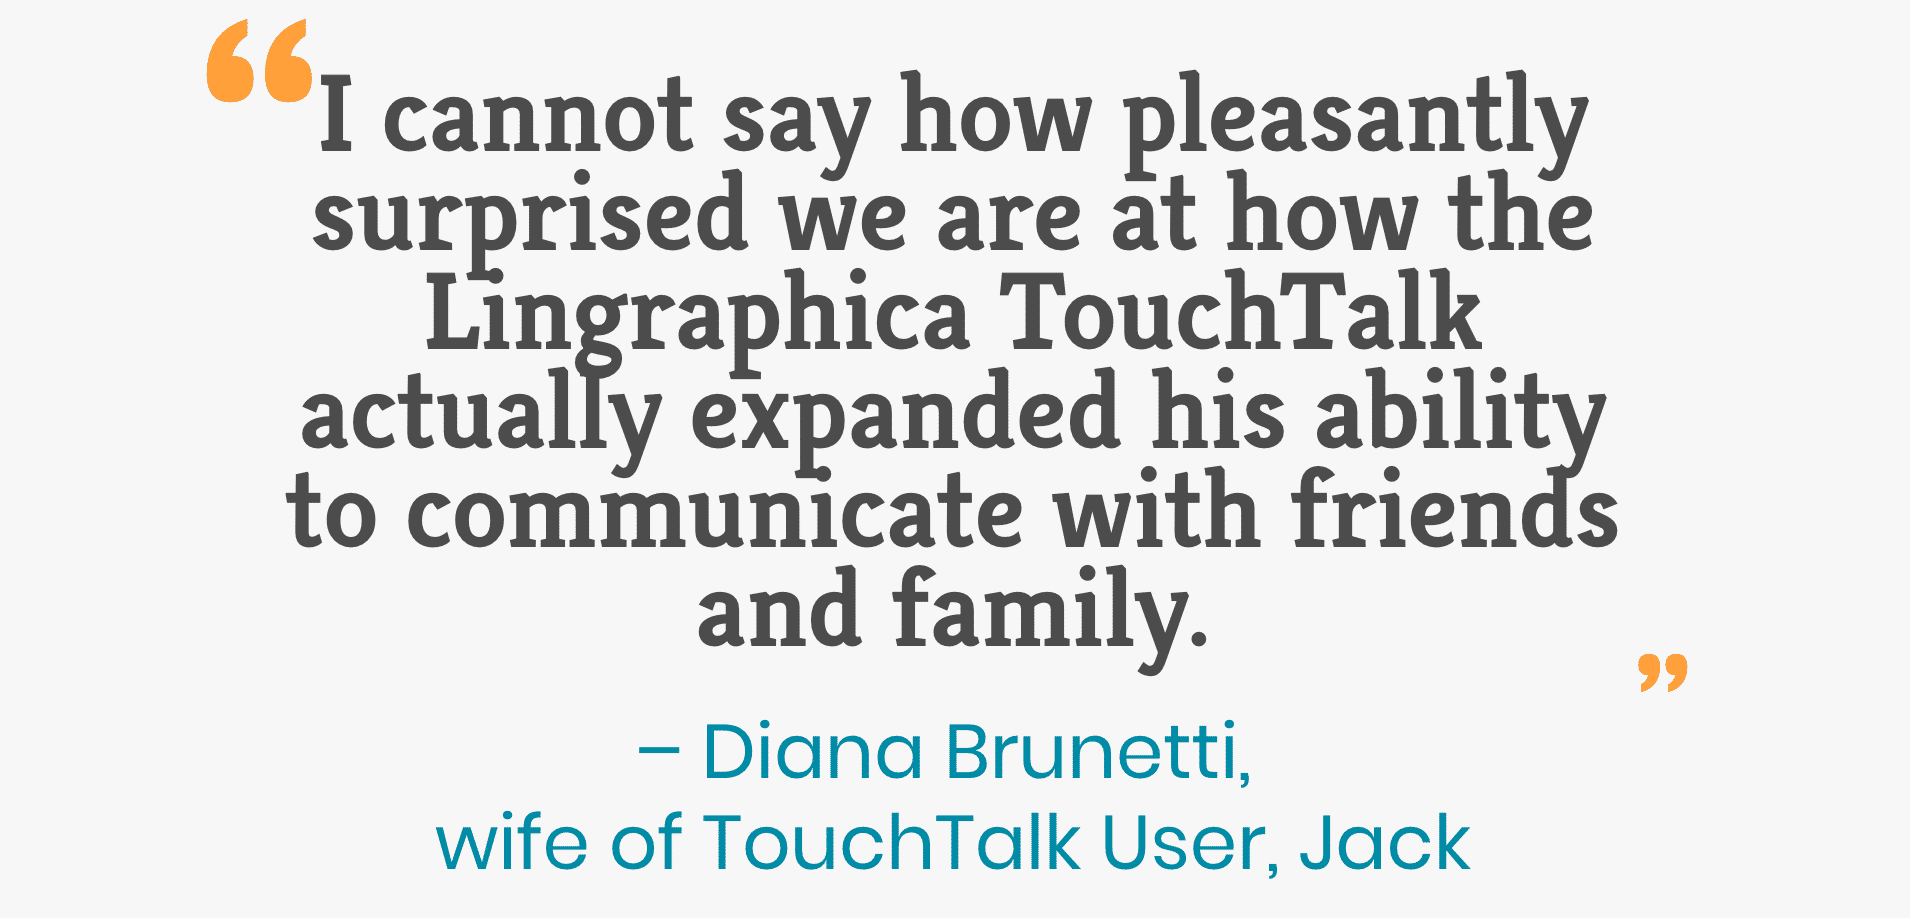 No puedo decir cuán gratamente sorprendidos estamos de cómo Lingraphica TouchTalk expandió su capacidad para comunicarse con amigos y familiares. - Diana Brunetti, esposa del usuario de TouchTalk, Jack